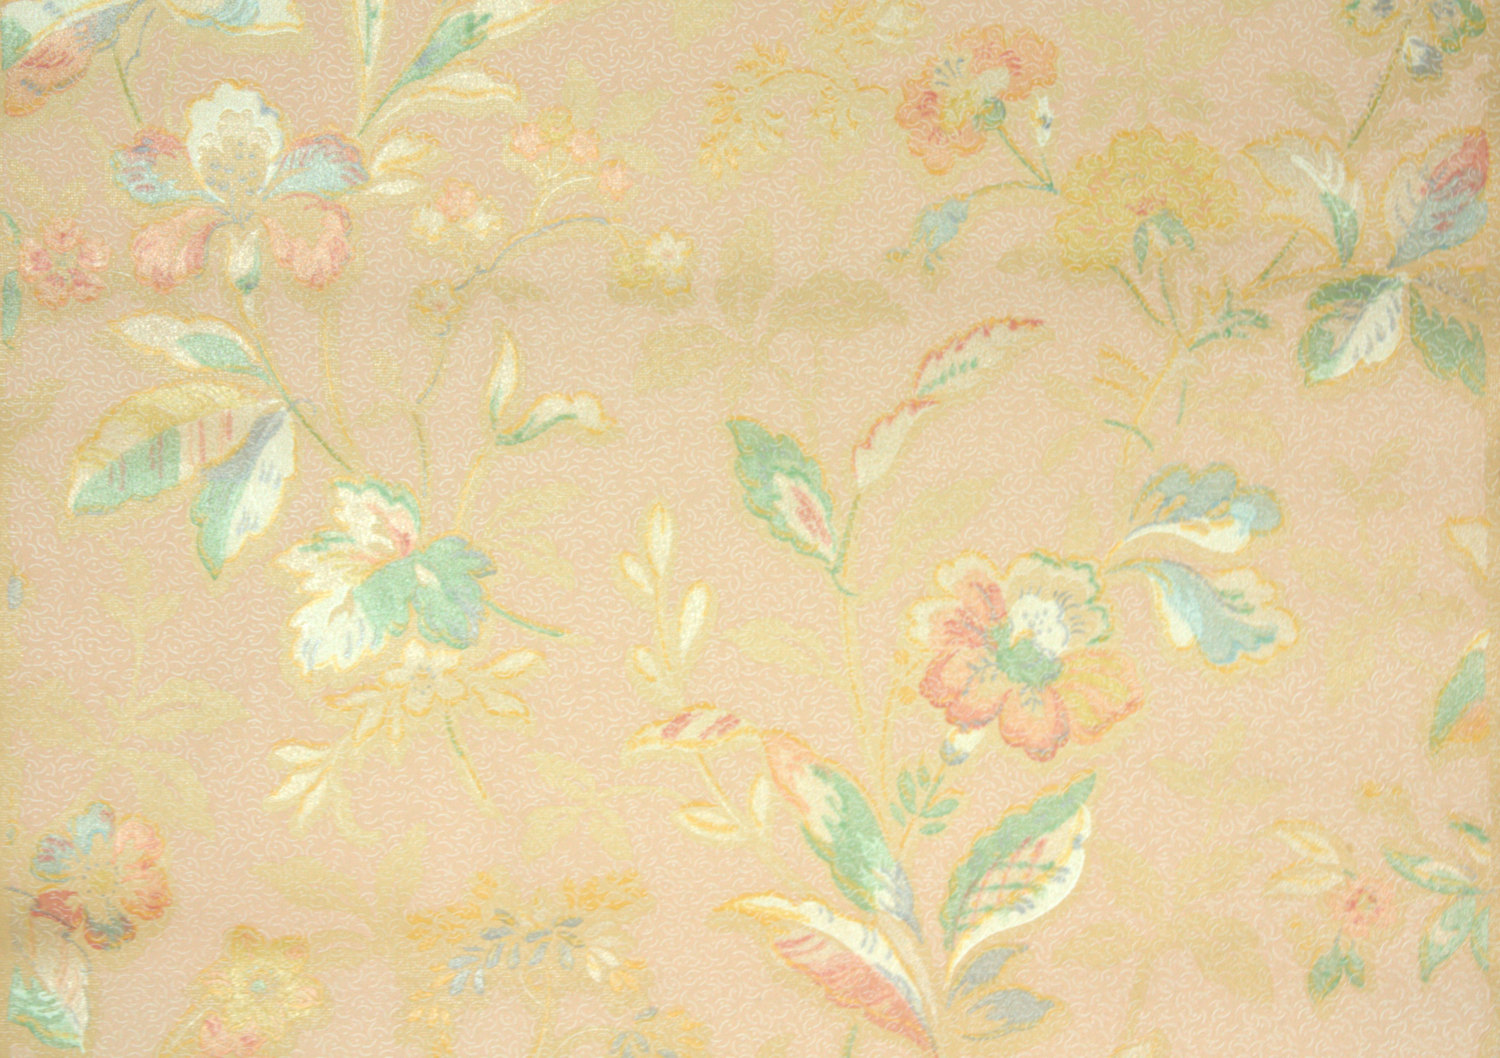 Listing 1920s Vintage Wallpaper Antique Floral